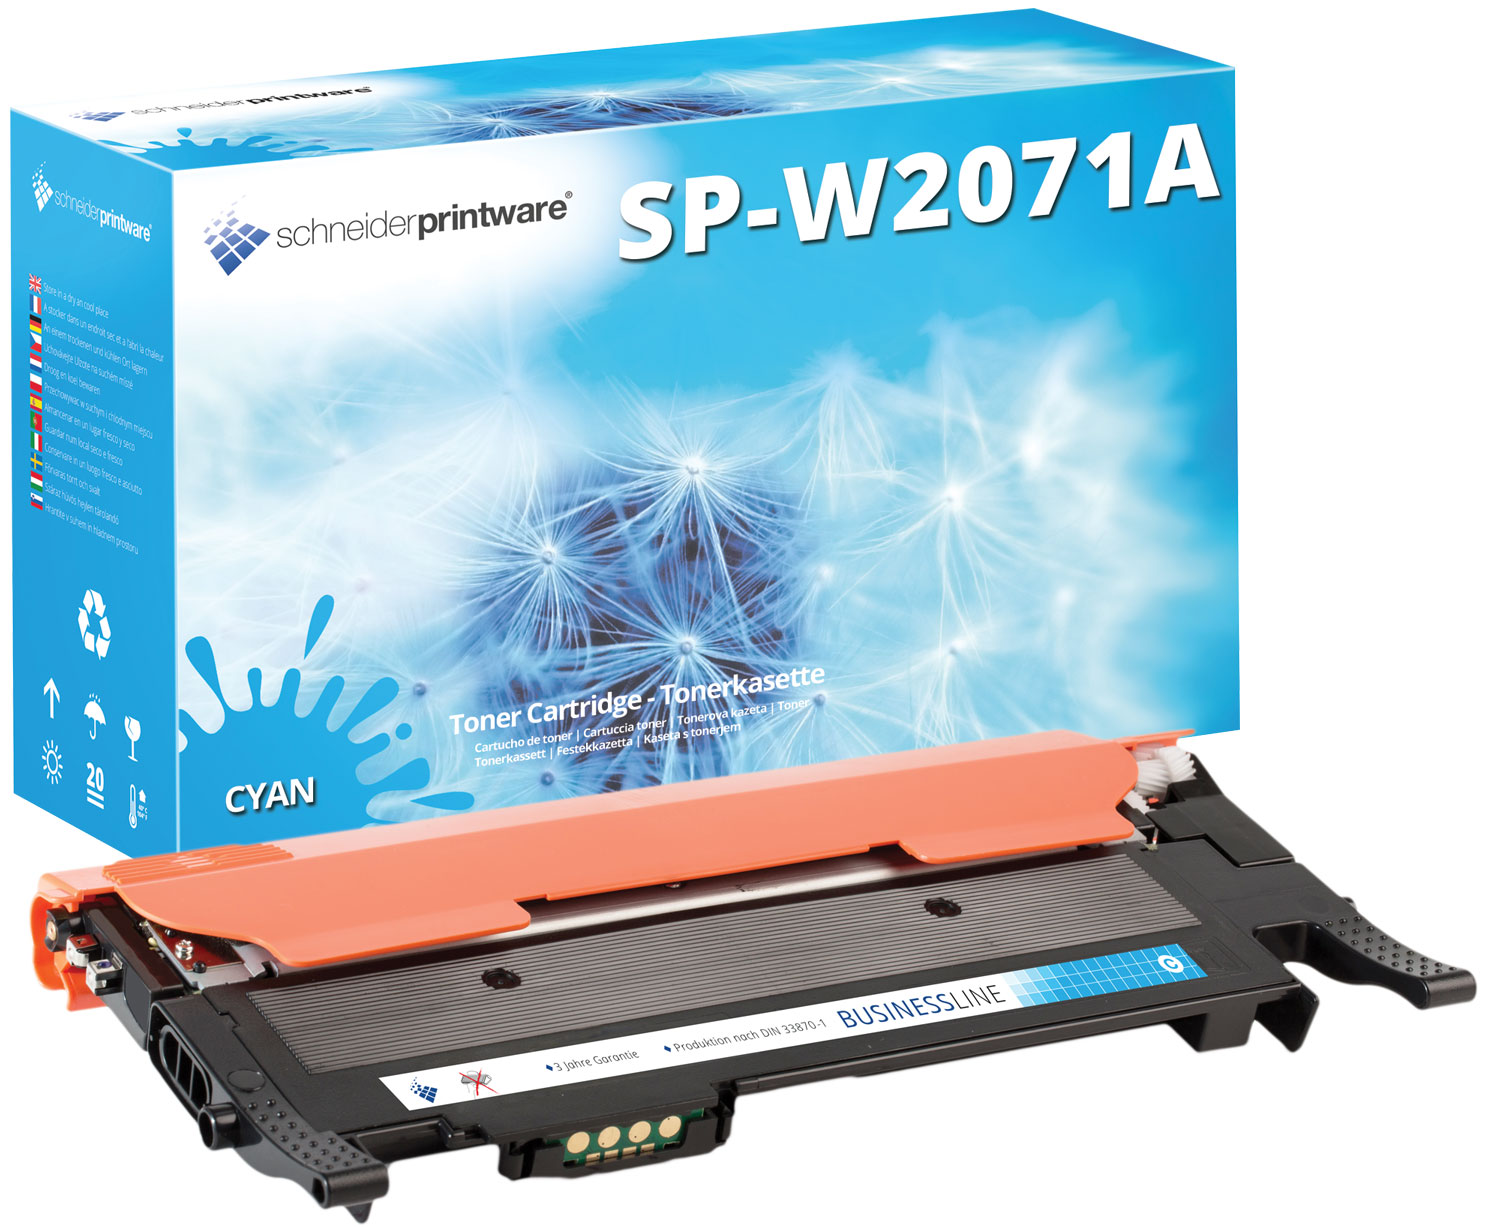 Schneiderprintware Toner ersetzt HP W2071A Cyan